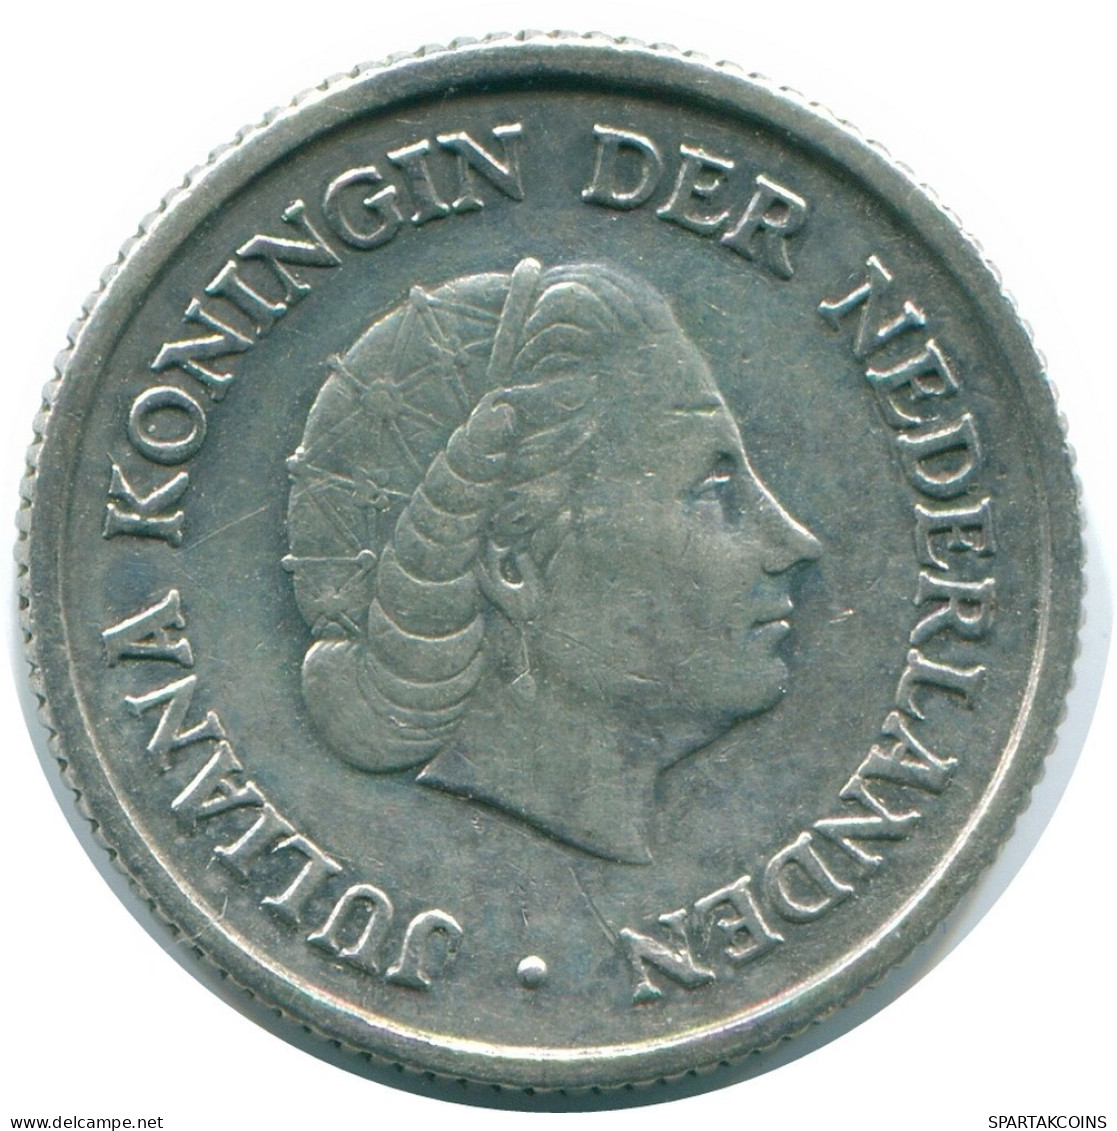 1/4 GULDEN 1957 NIEDERLÄNDISCHE ANTILLEN SILBER Koloniale Münze #NL10975.4.D.A - Nederlandse Antillen